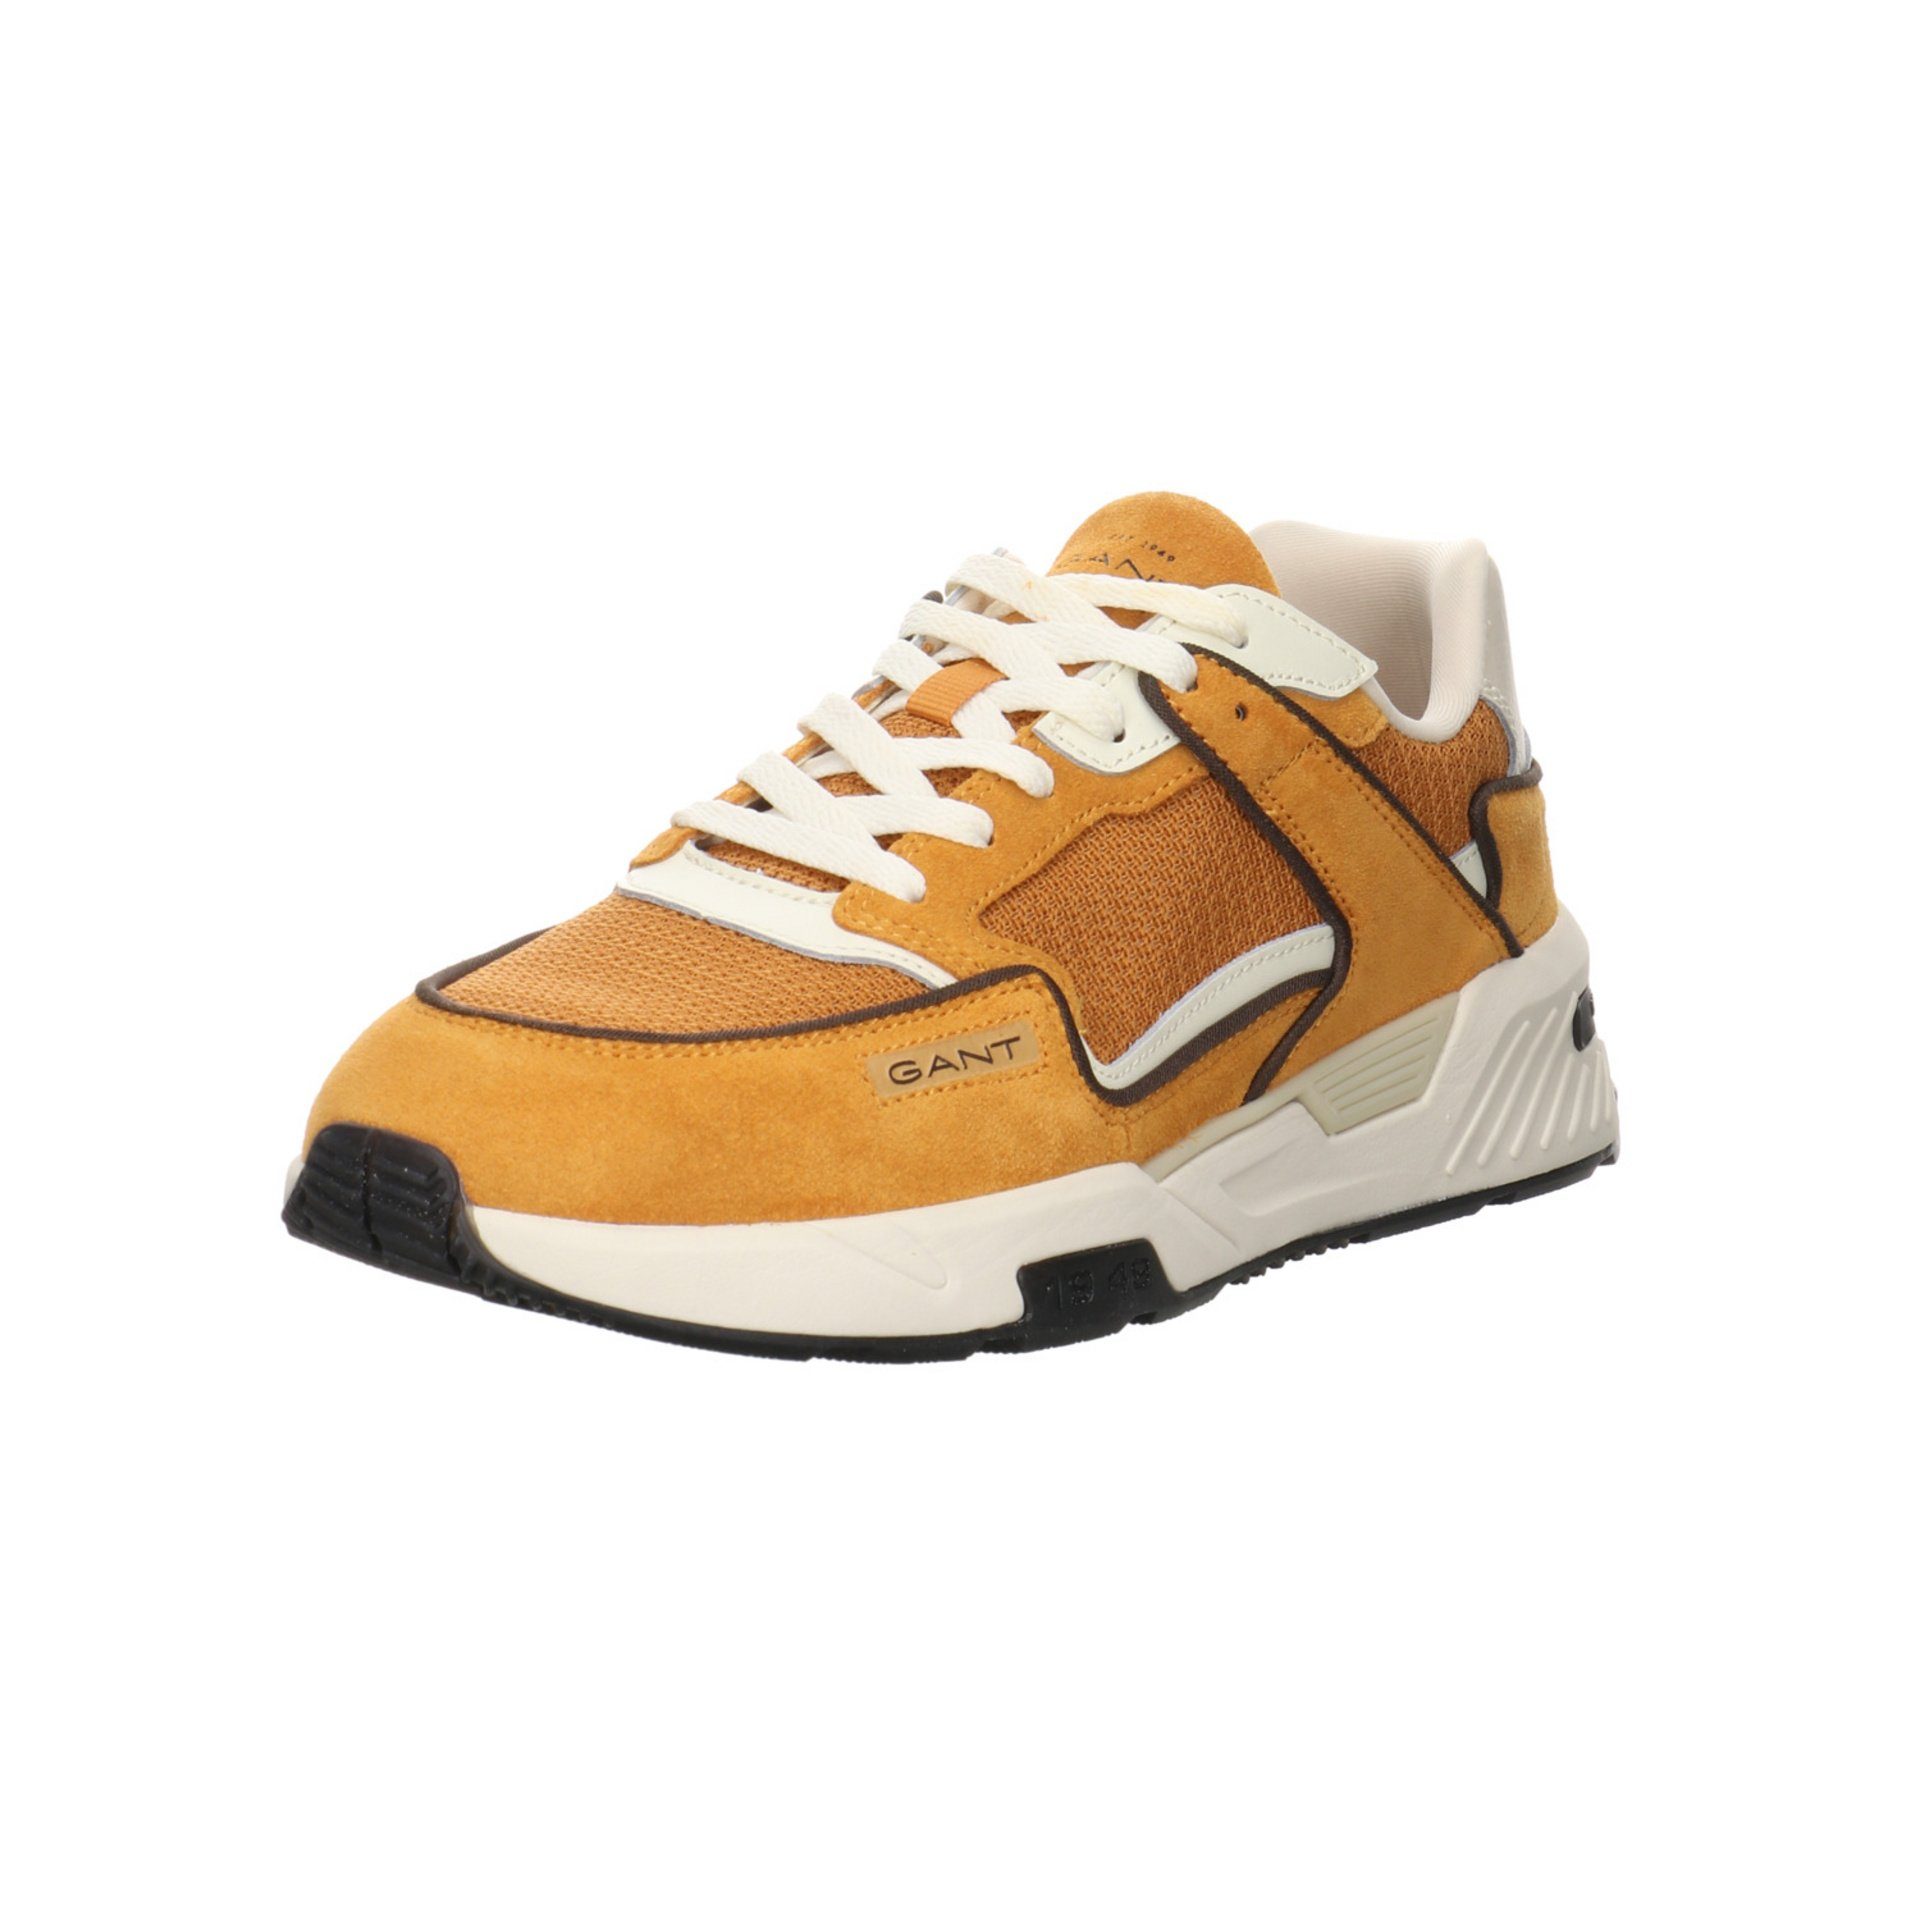 Gant Carst Sneaker Freizeit Elegant Schuhe Sneaker Leder-/Textilkombination